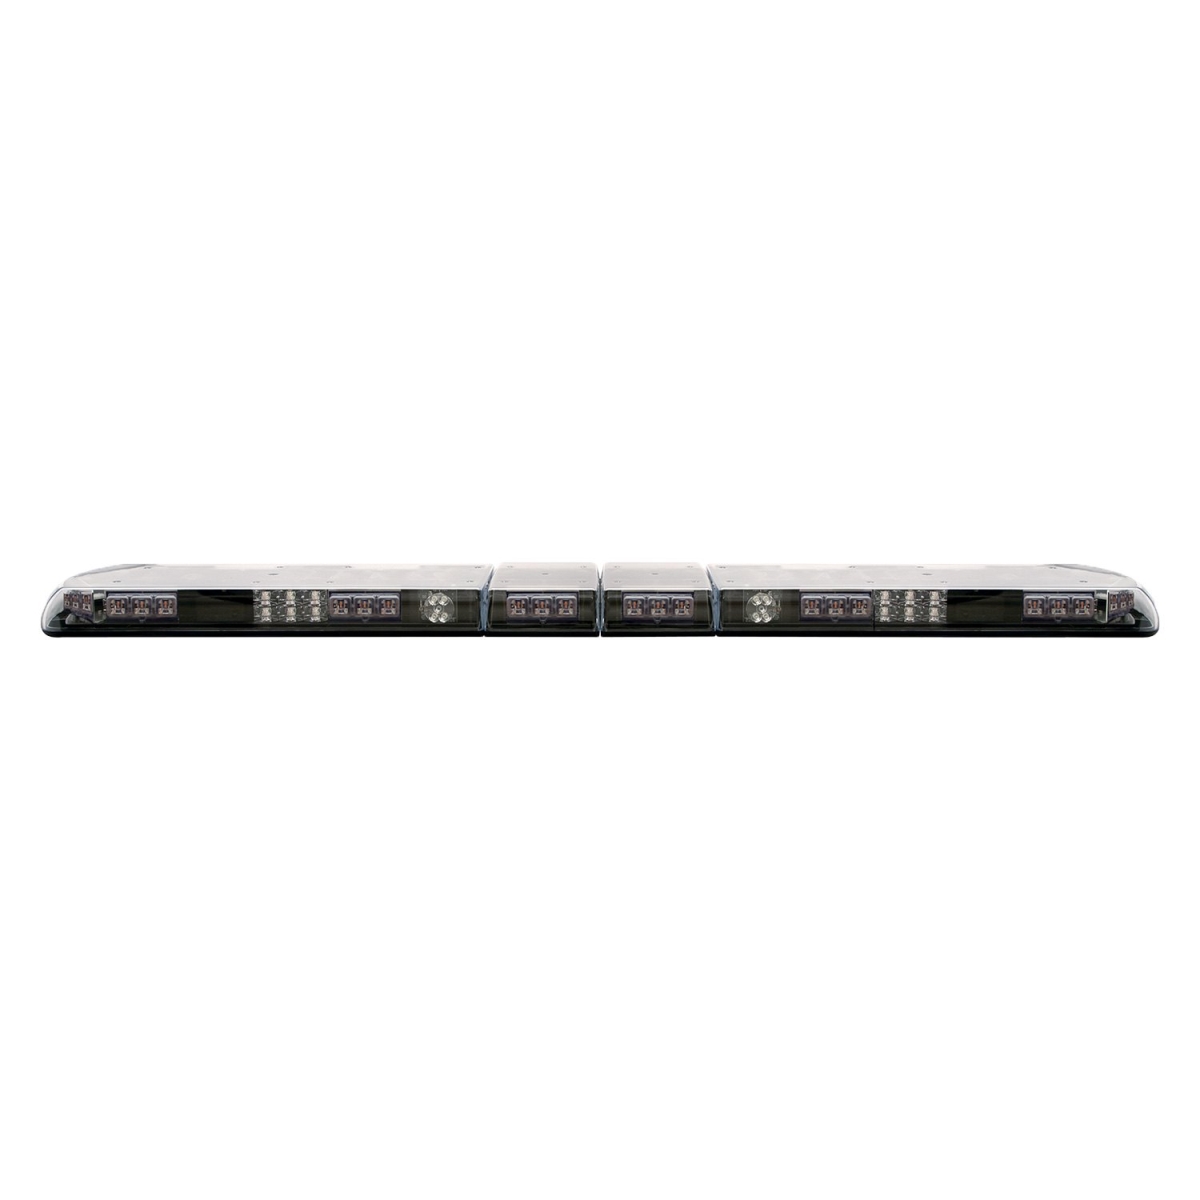 Ecc12-20005-e Lightbar Vantage 54 In. 16 Led Modules Stt 2 Rear Worklamps Alley Lights 12-24vdc - Amber